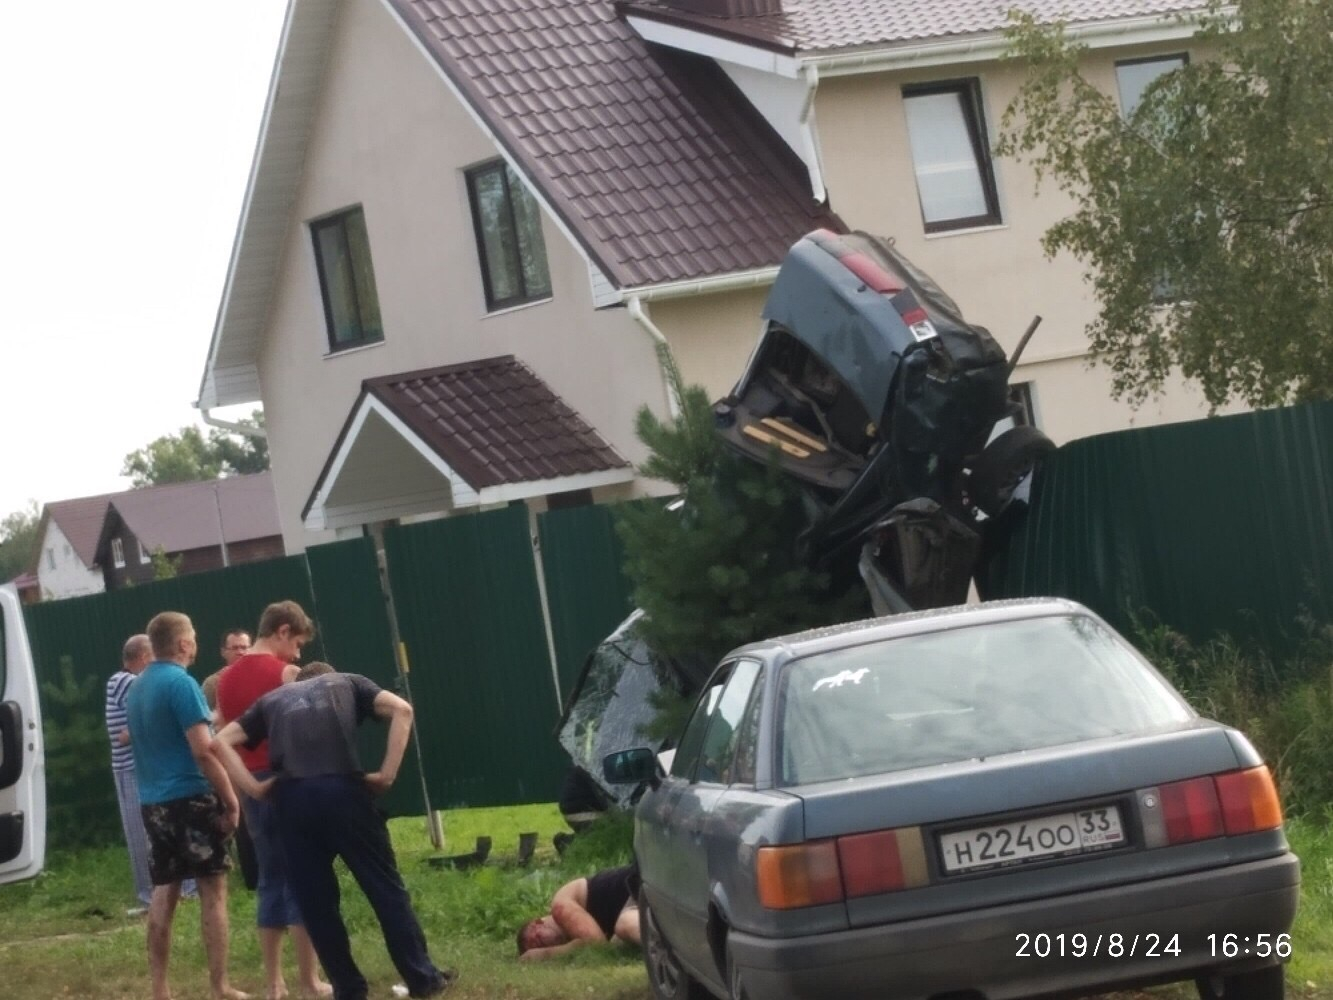 Пьяные подростки в Камешковском районе протаранили забор на автомобиле